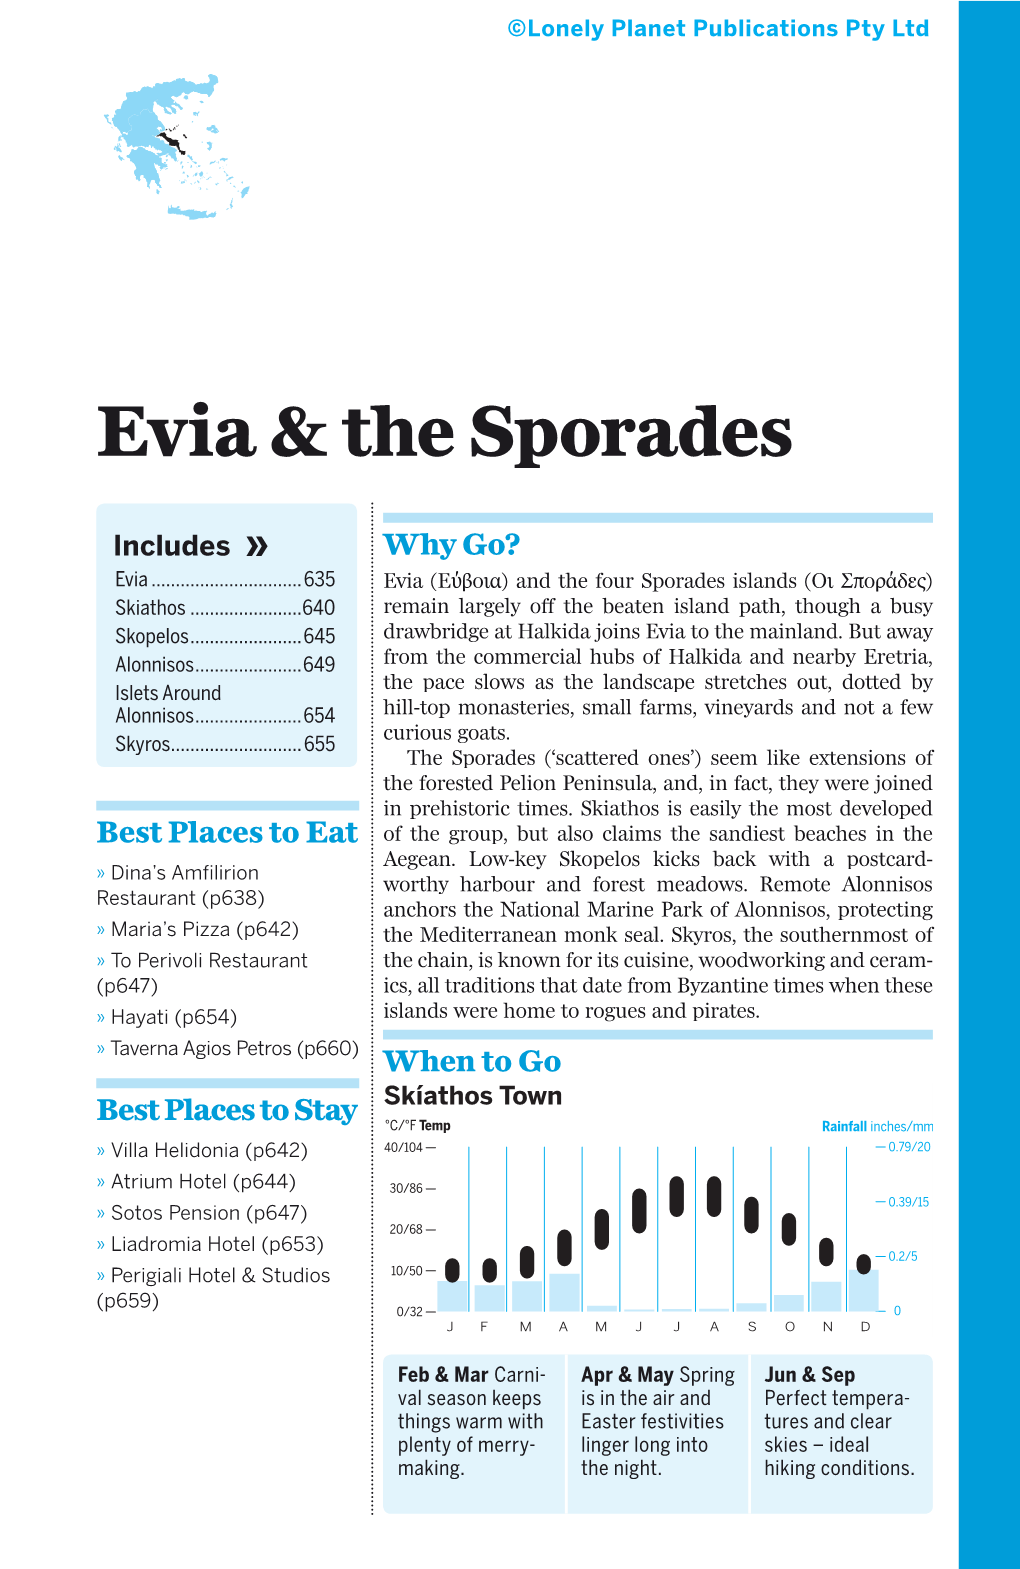 Evia & the Sporades